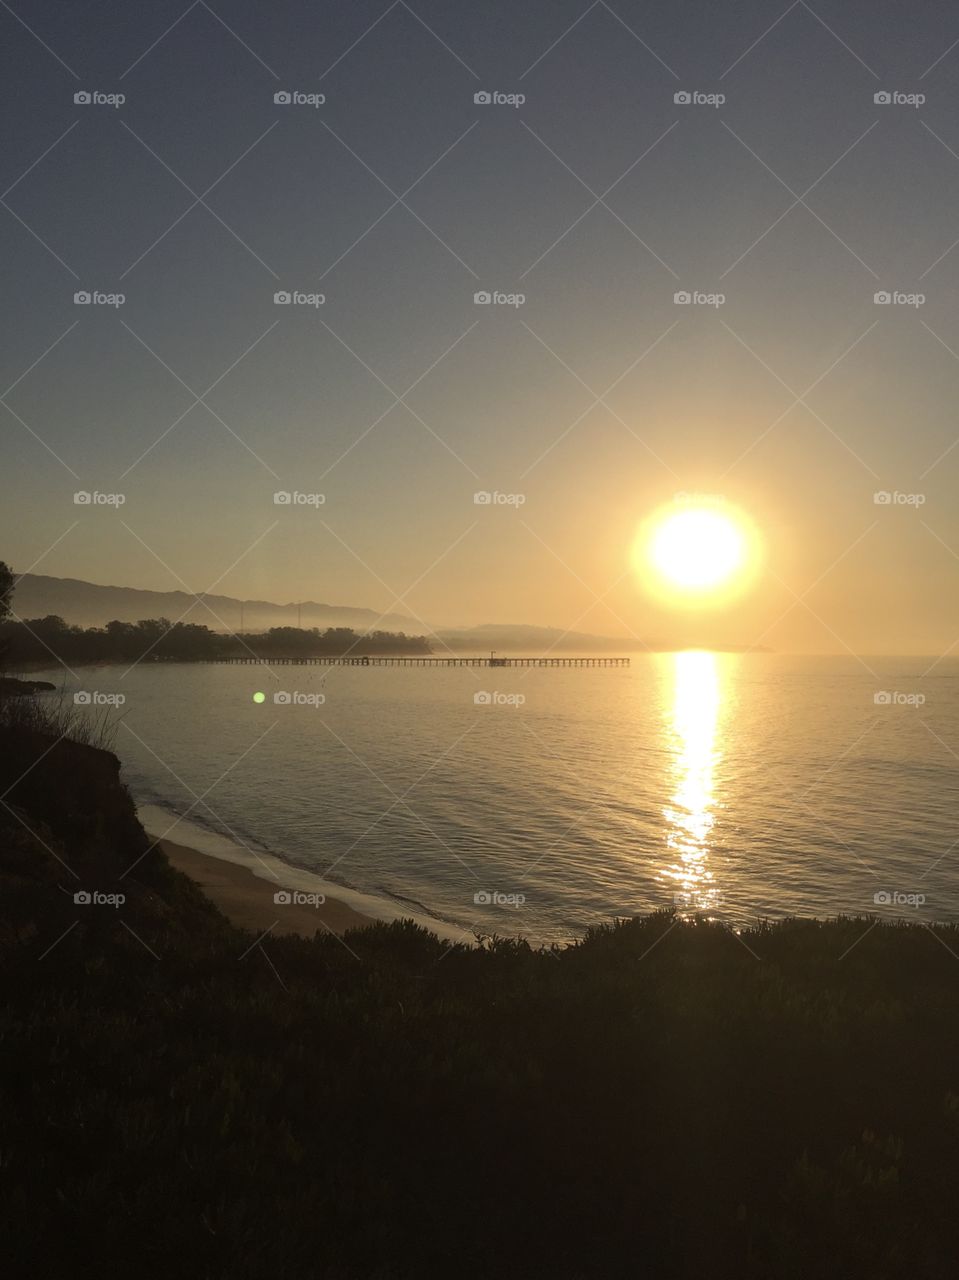 Sun rise at Santa Barbara. Night sun, water, pier. Sun reflecting on water. 